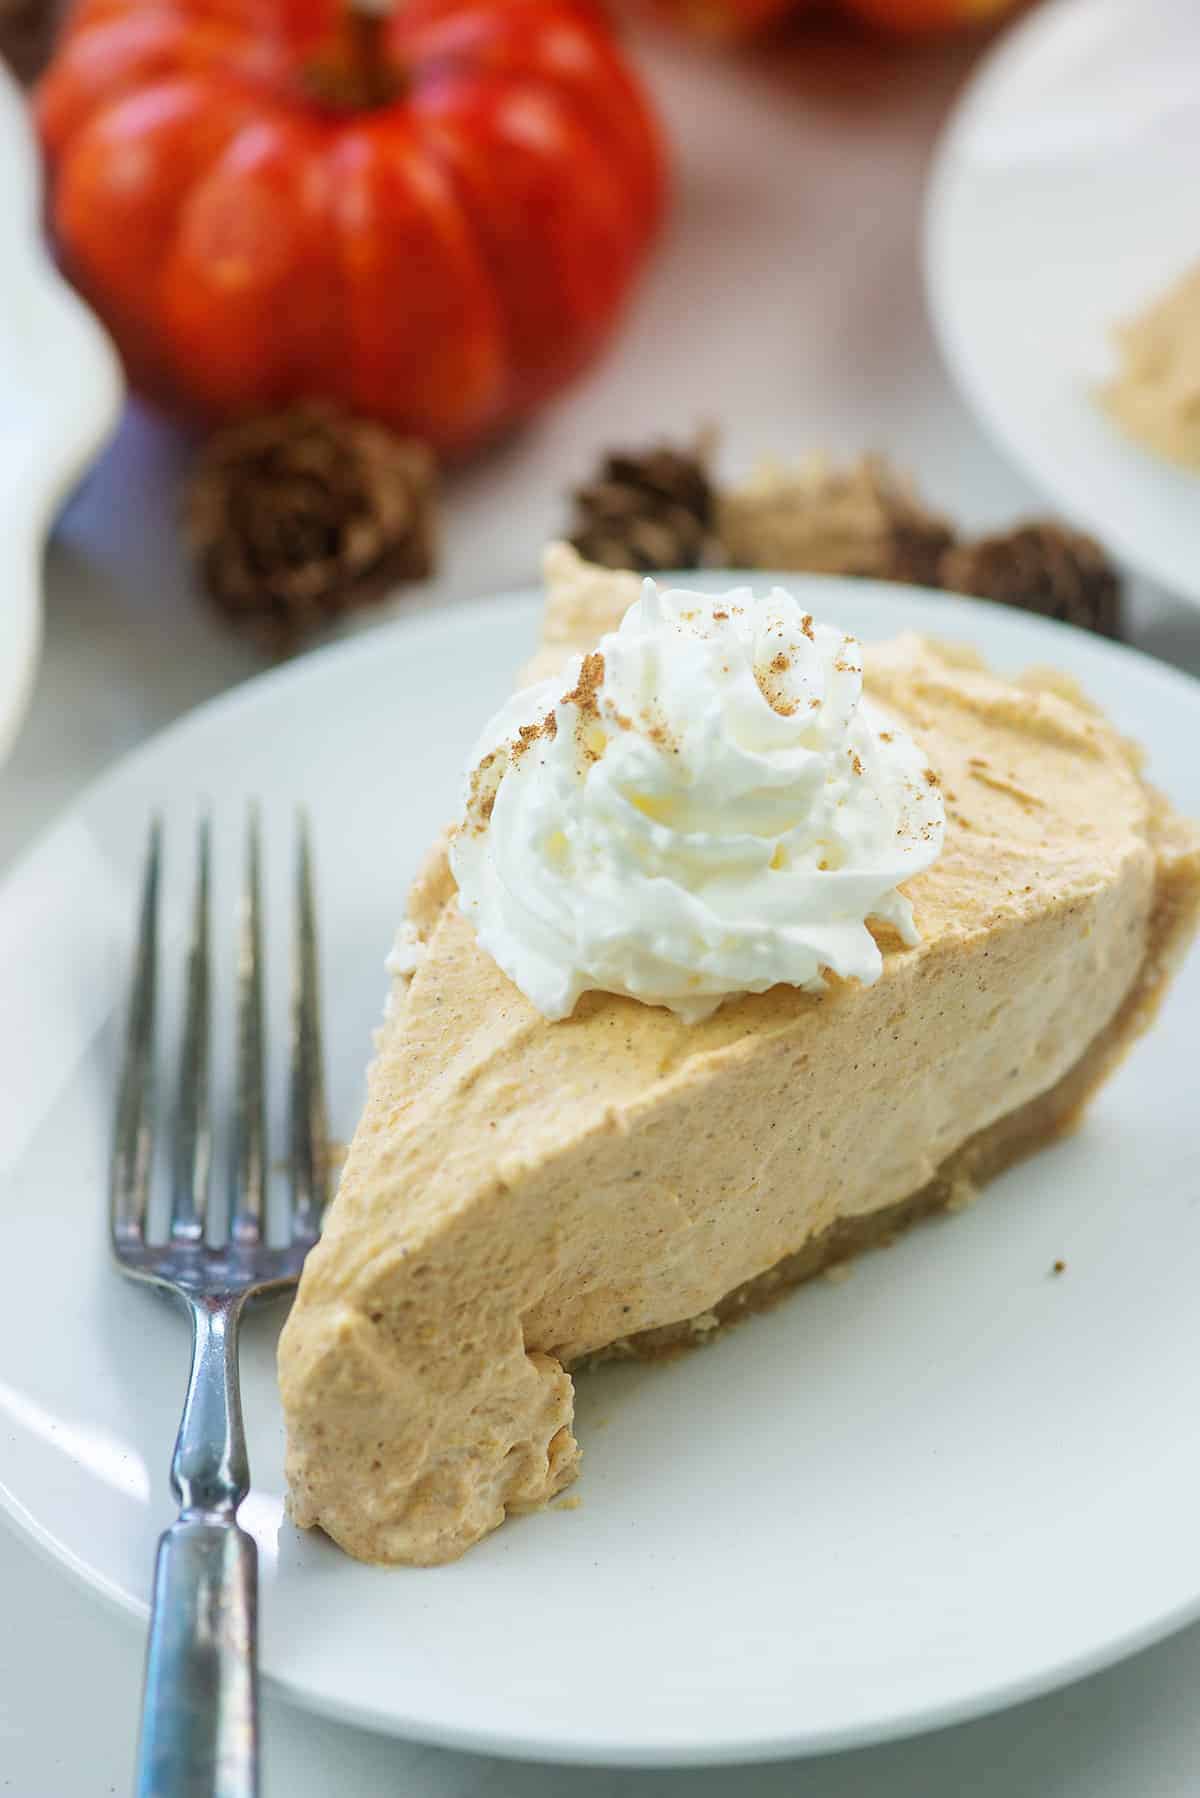 Easy Quick Pumpkin Pie With Cream Cheese / The Best Vegan Pumpkin Pie Easy Gluten Free Recipe ...